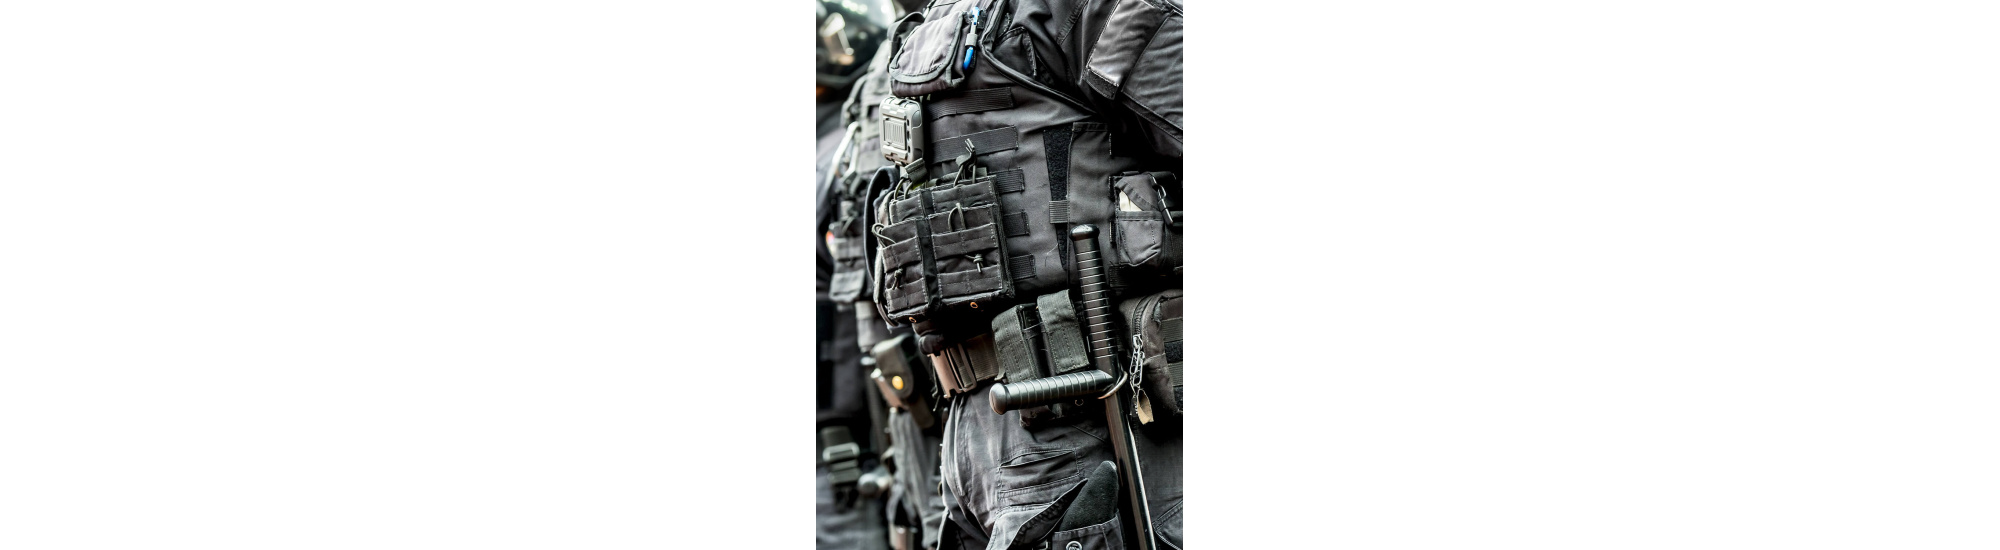 Bâton de défense / de maintien de l'ordre  SAPL - Matériels pour Force de  Sécurité